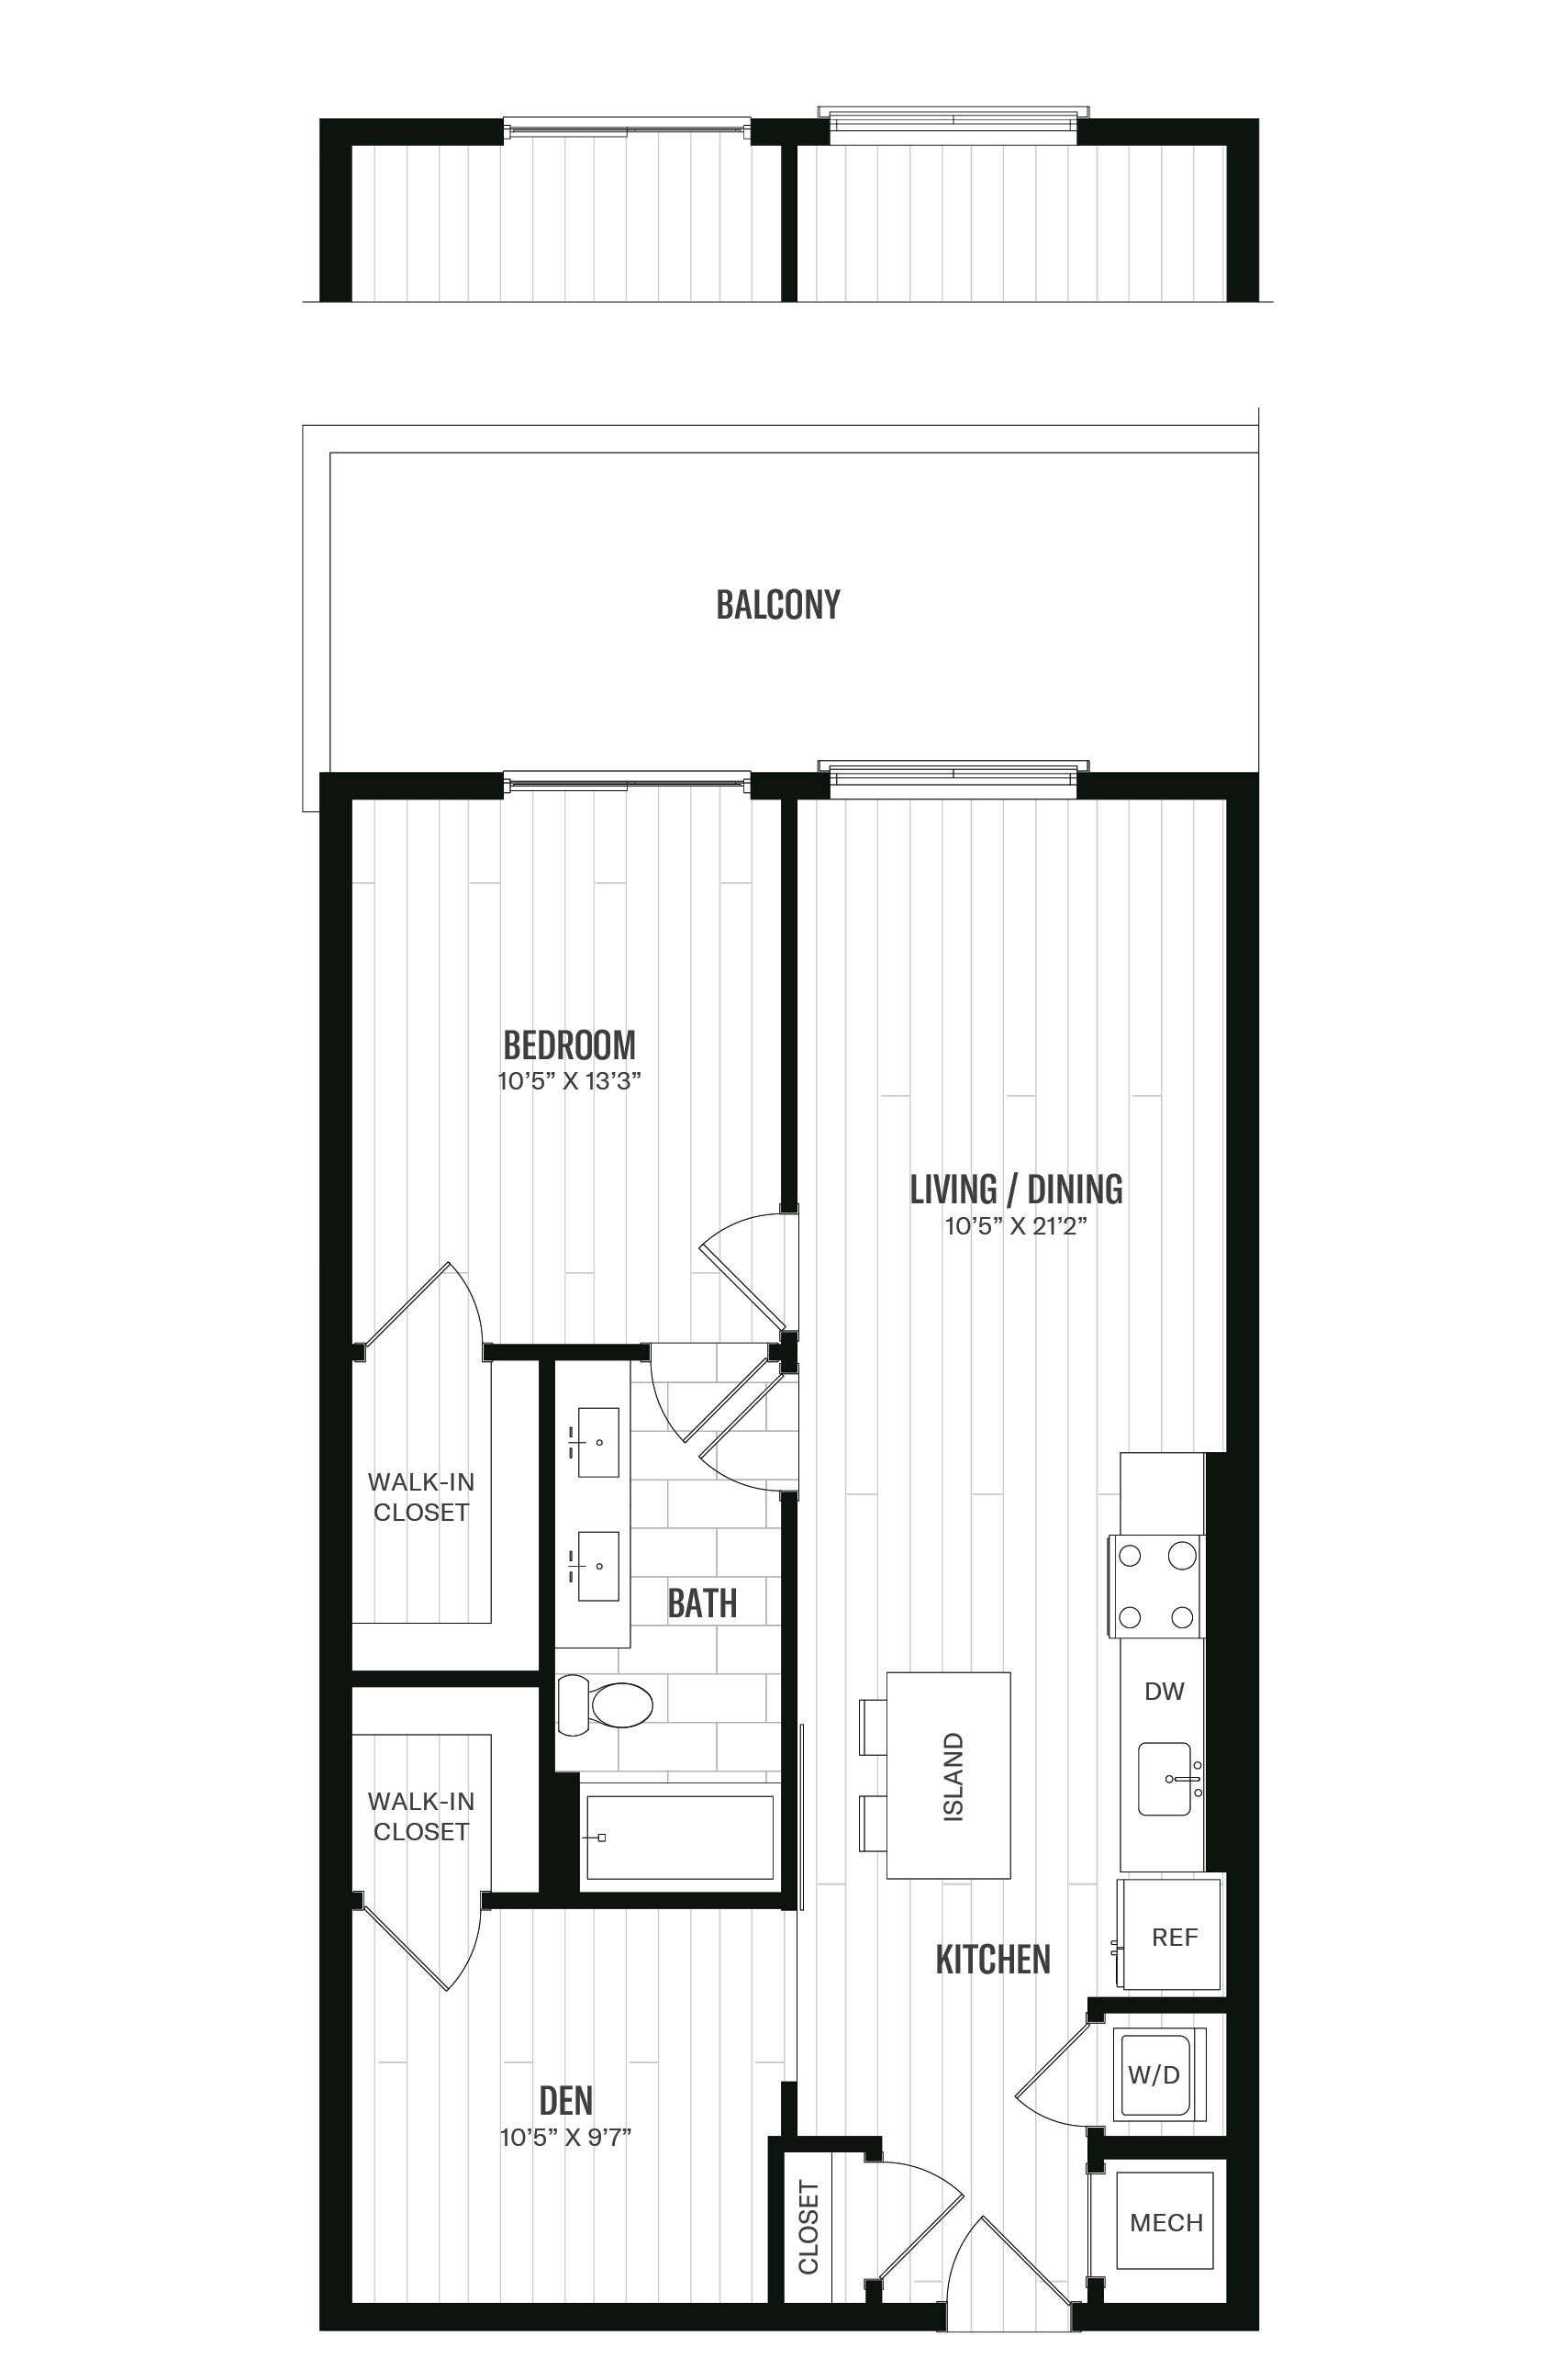 Floorplan image of unit 521